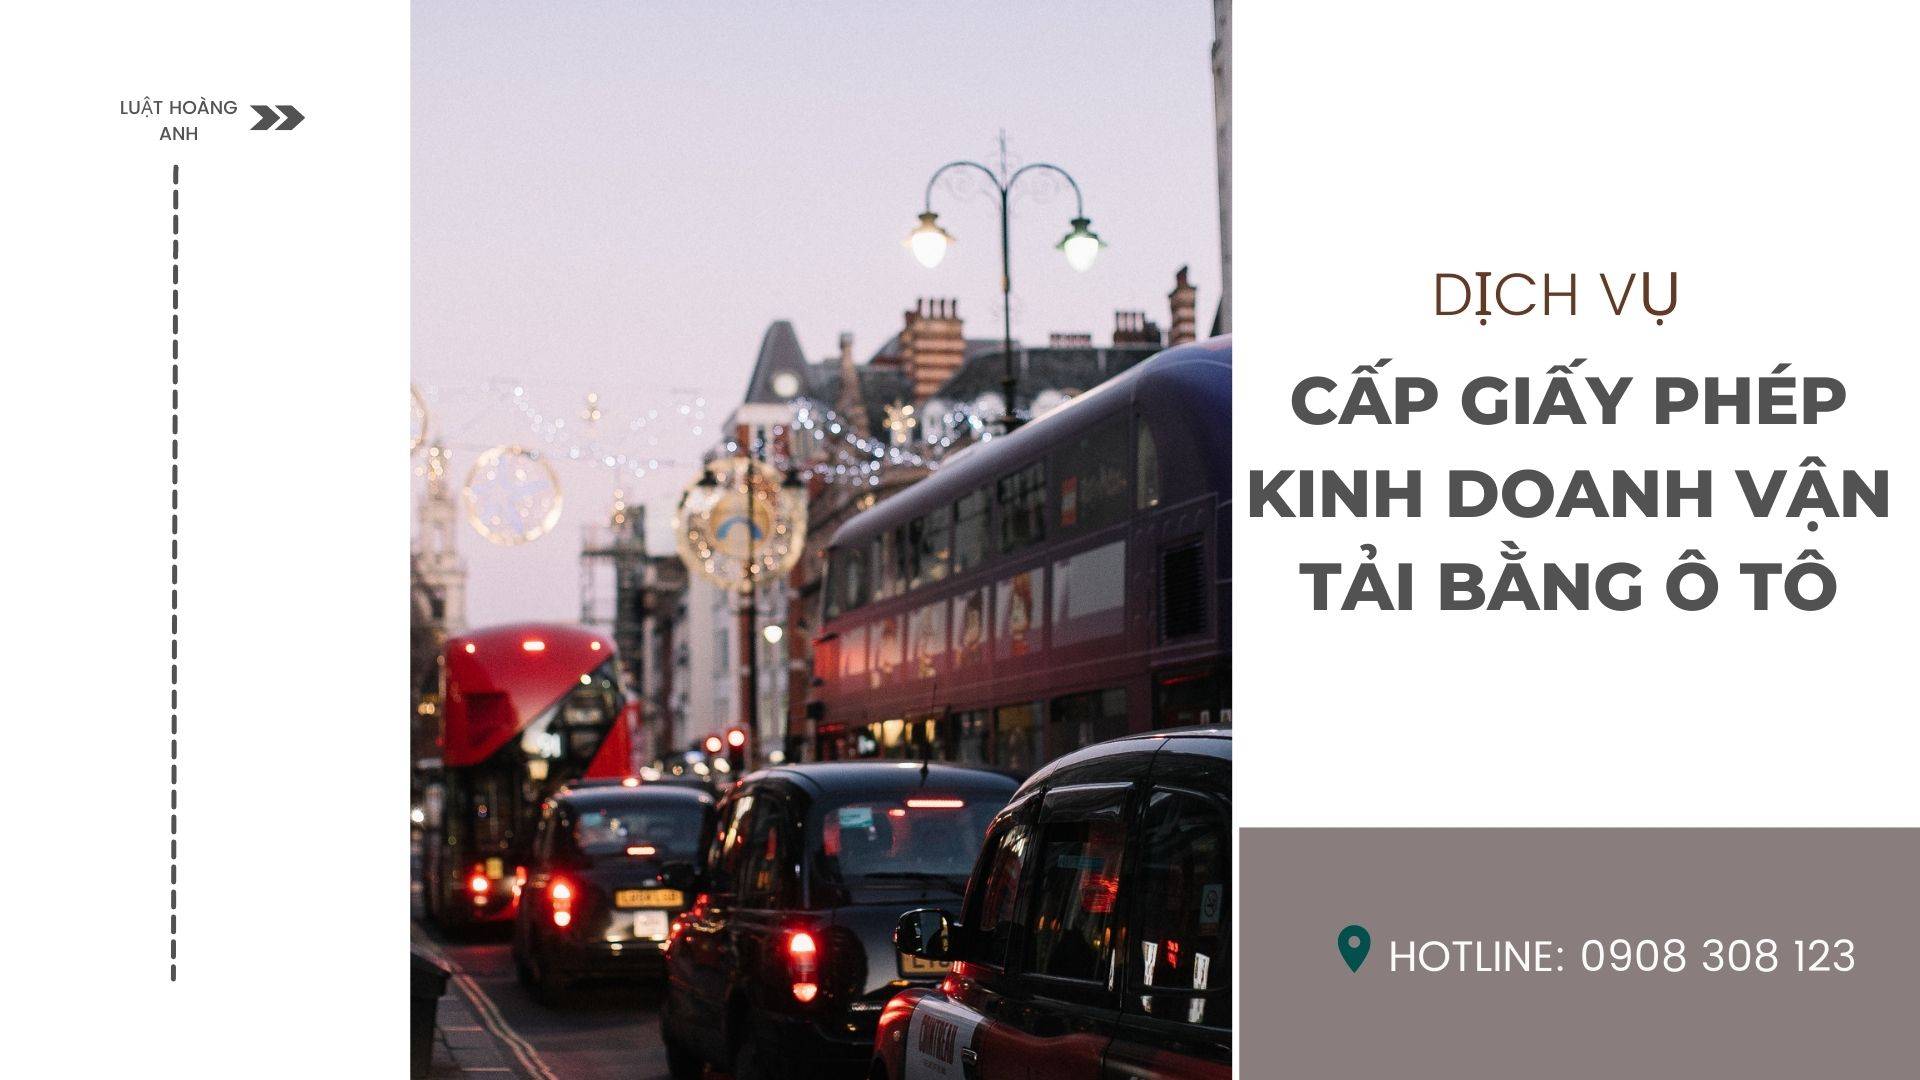 Dịch vụ cấp giấy phép kinh doanh vận tải bằng ô tô tại thành phố Đà Nẵng